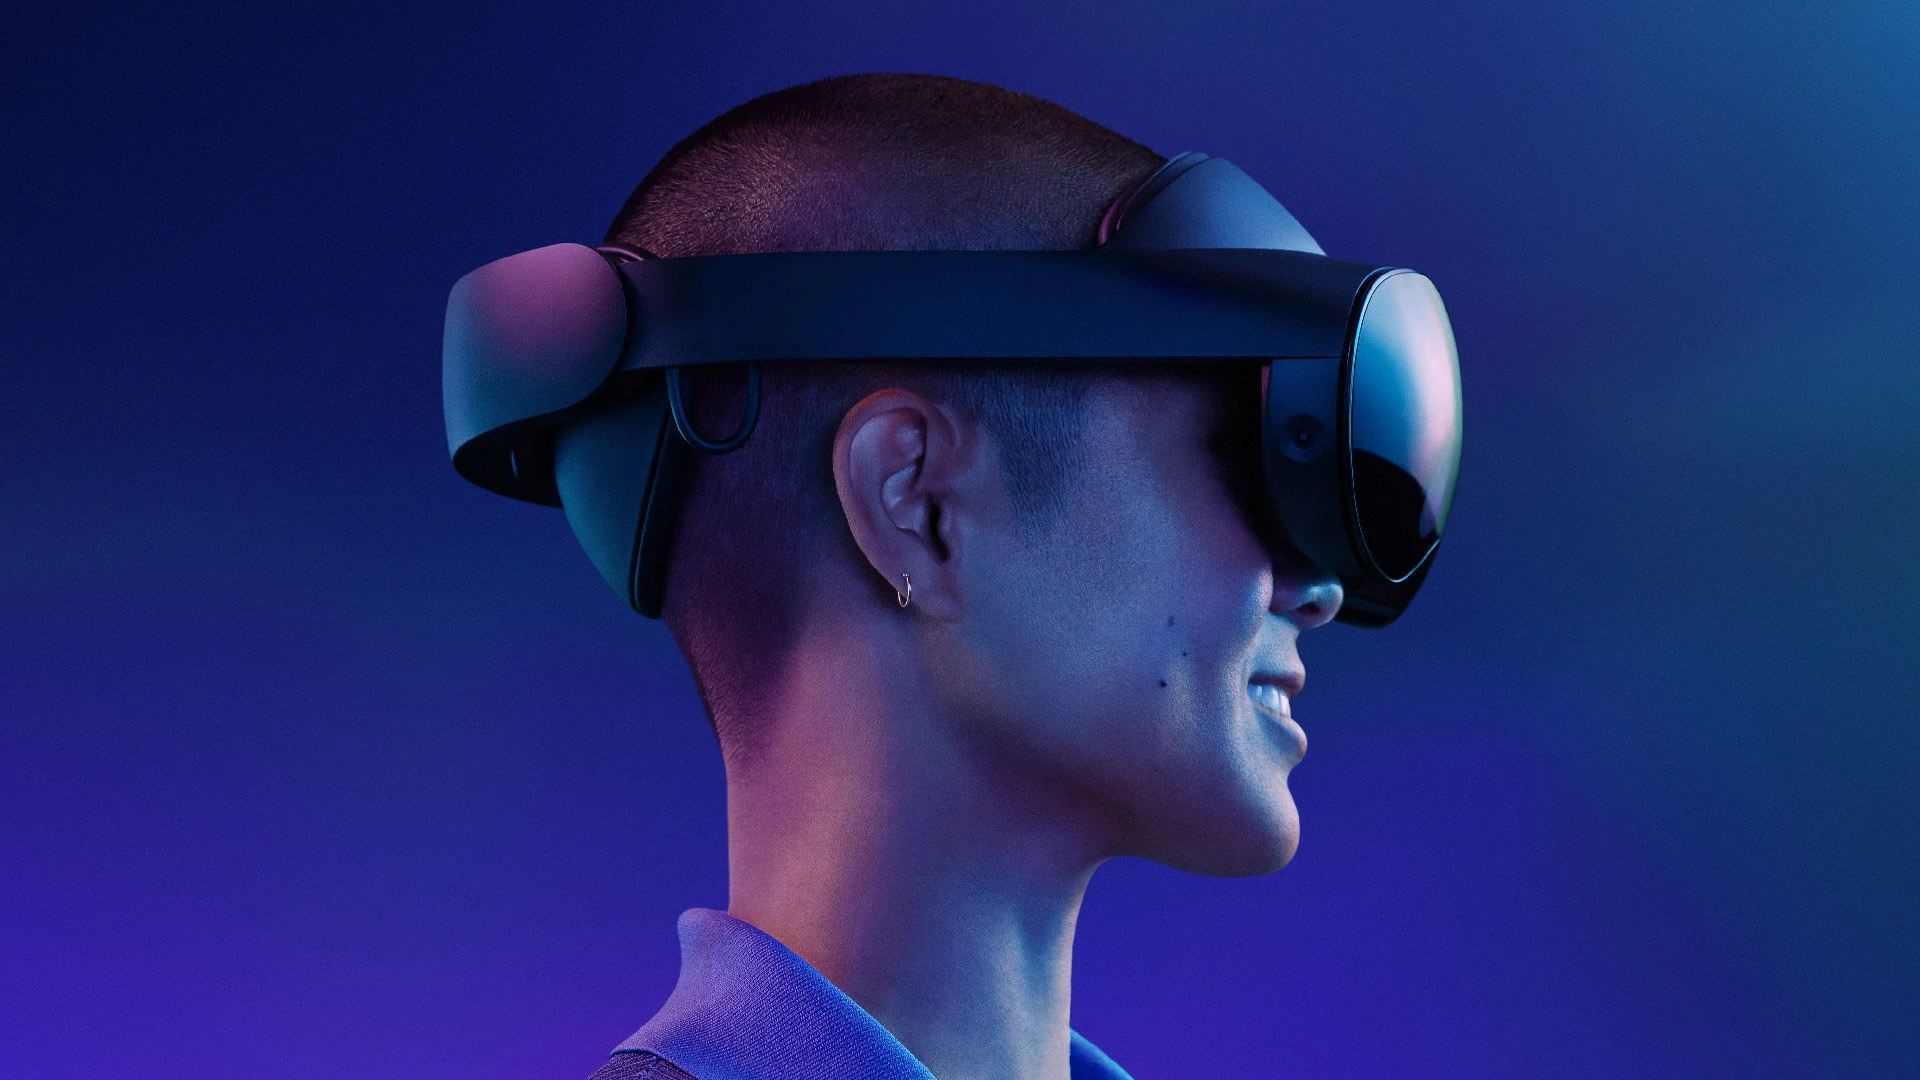 Meta senkt den Preis für das Quest Pro VR-Headset um 500 Dollar und das Quest 2 Gaming-Headset um 70 Dollar